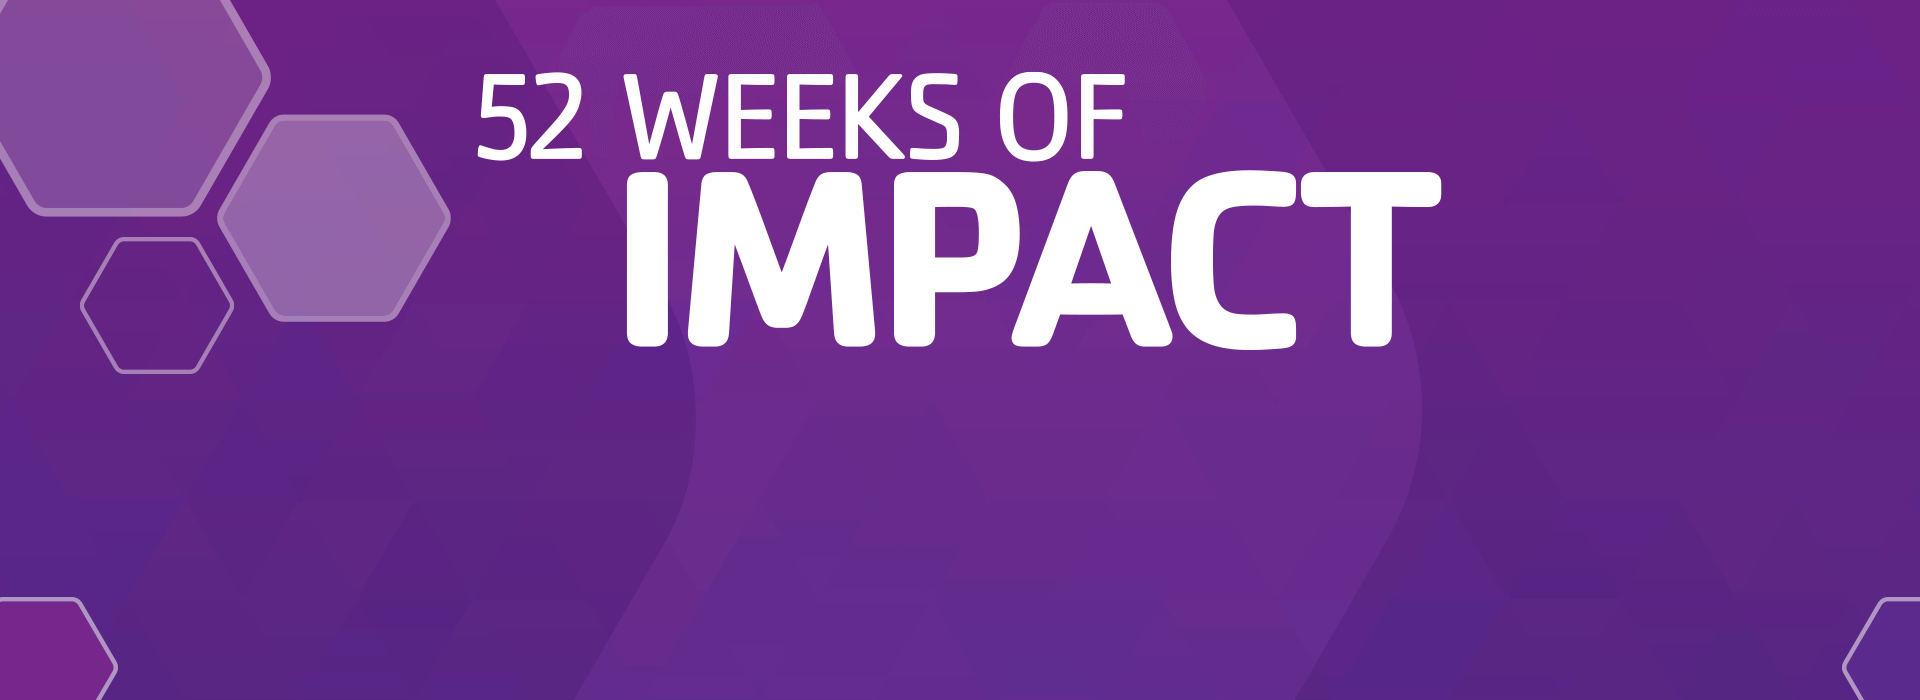 52 weeks of impact banner